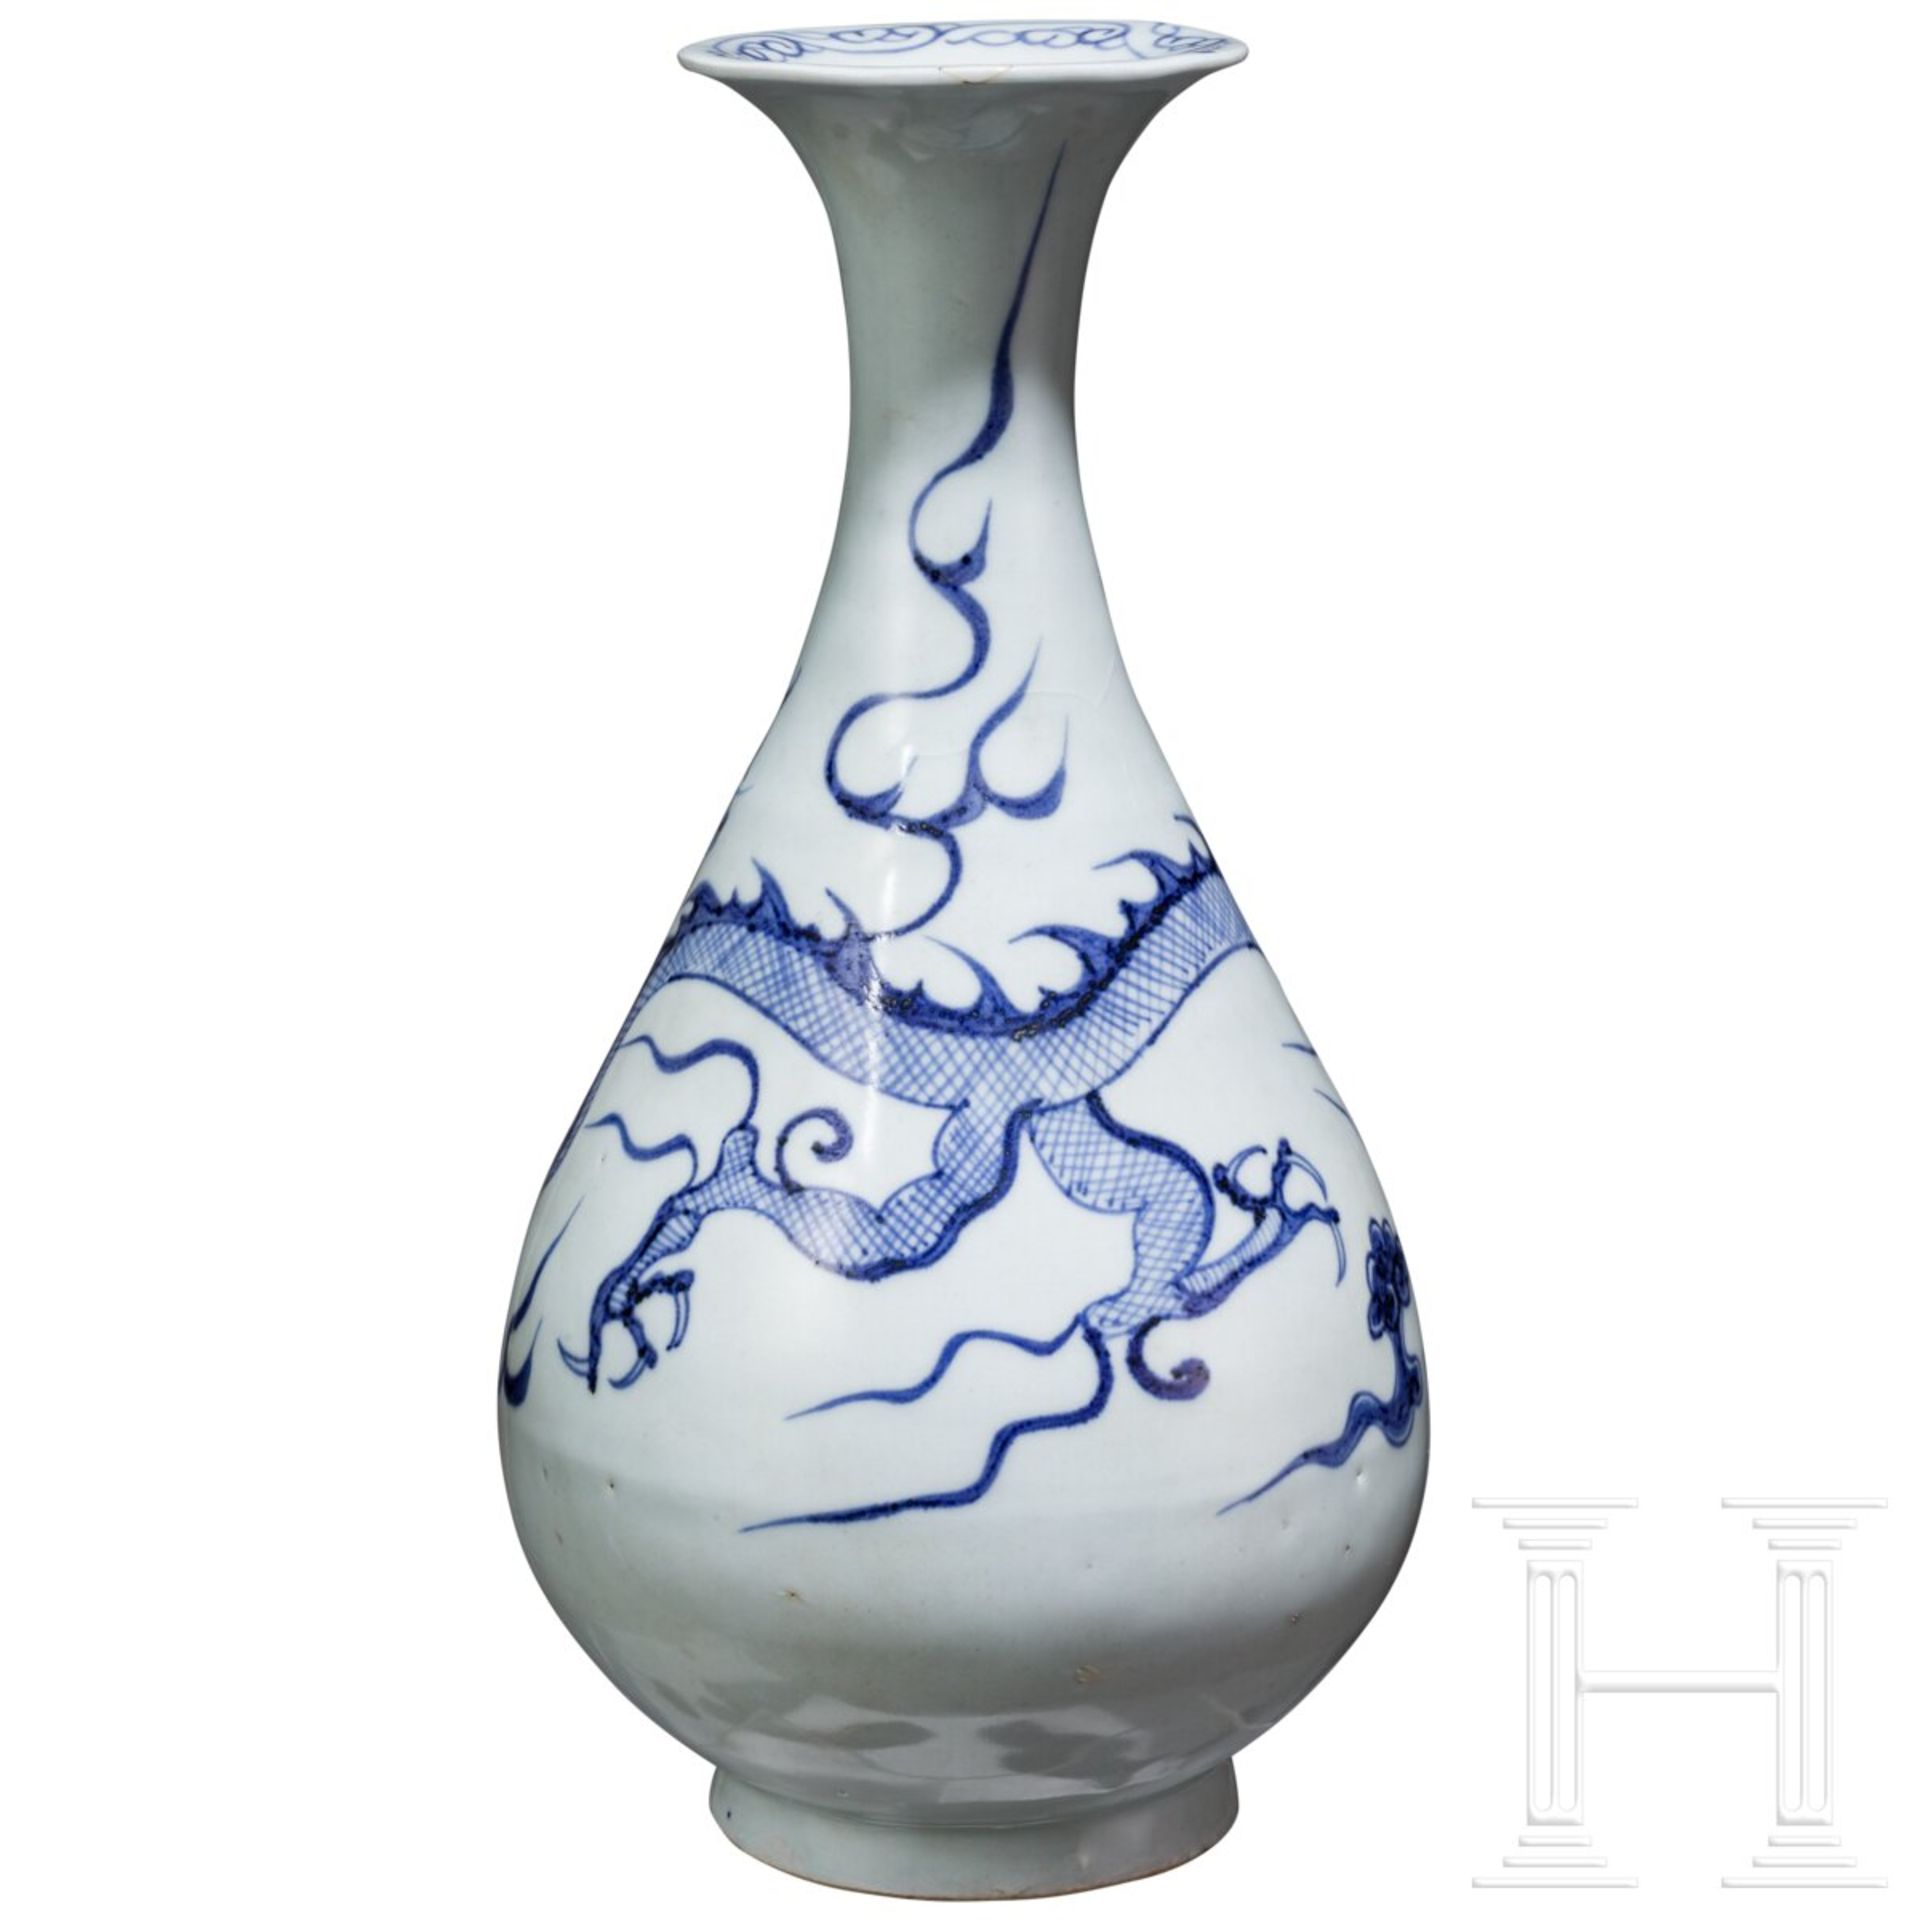 Birnenförmige blau-weiße Vase (Ping) mit Drache, China, wohl Yuan-Dynastie - Bild 3 aus 10